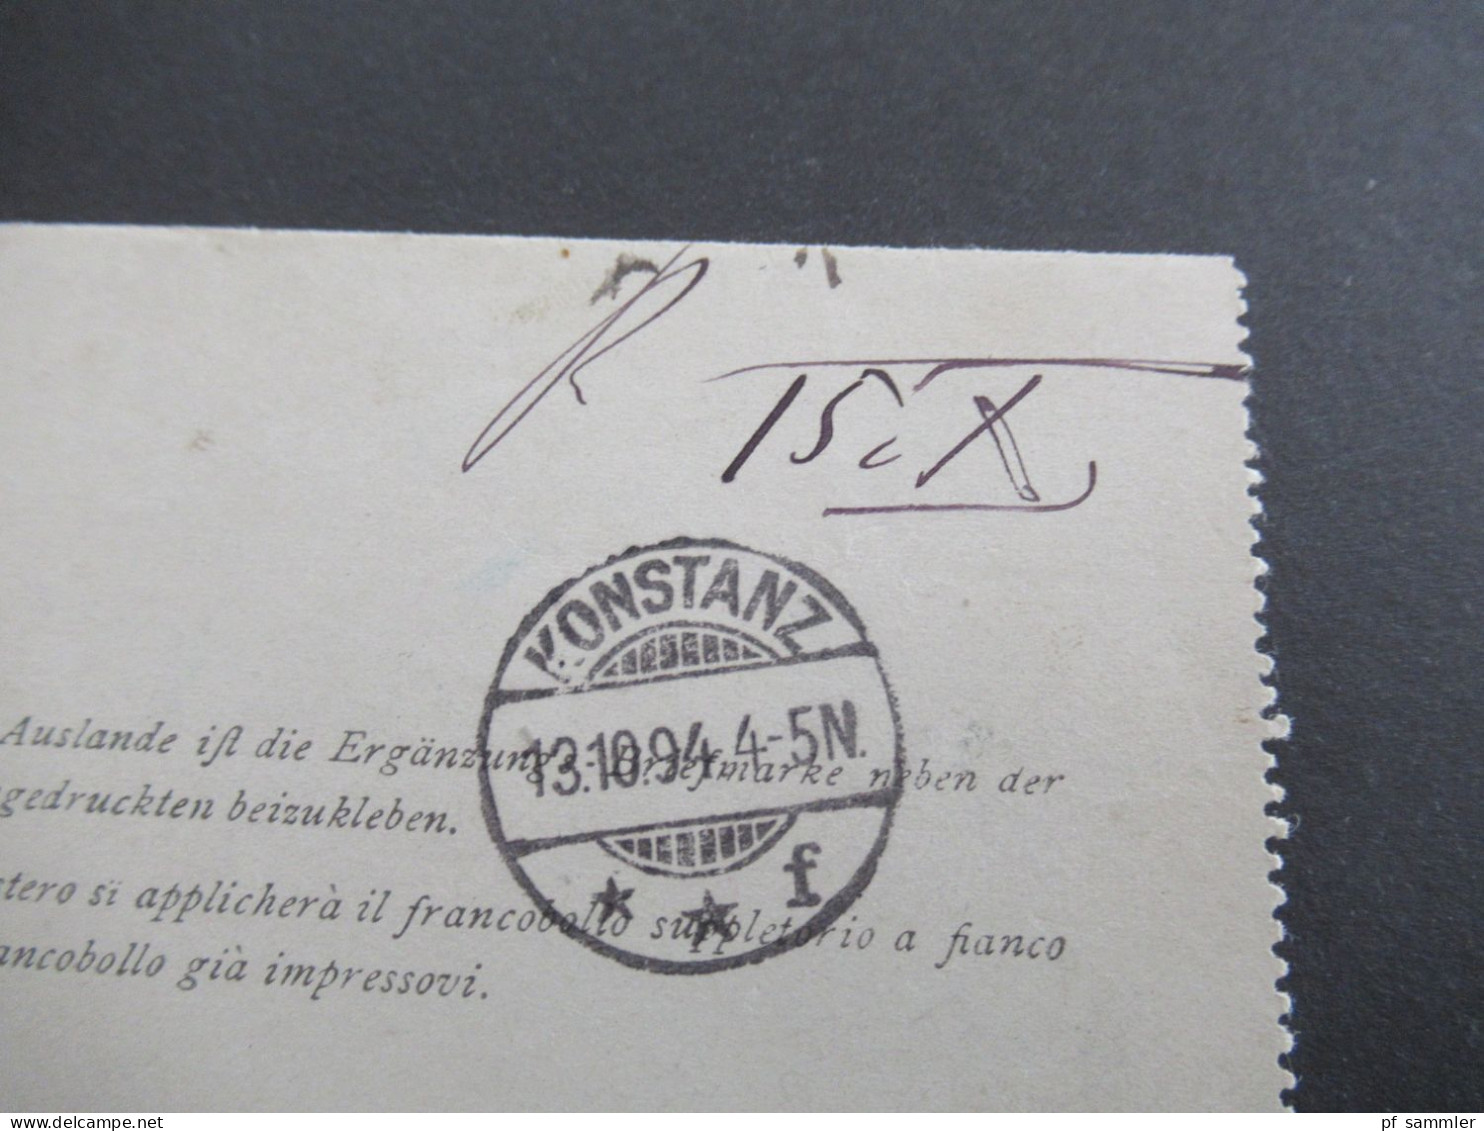 Österreich 1894 Kartenbrief 5 Kreuzer K2 Trient Trento - Konstanz Baden mit Ank. Gitterstempel Konstanz / Stromeyer